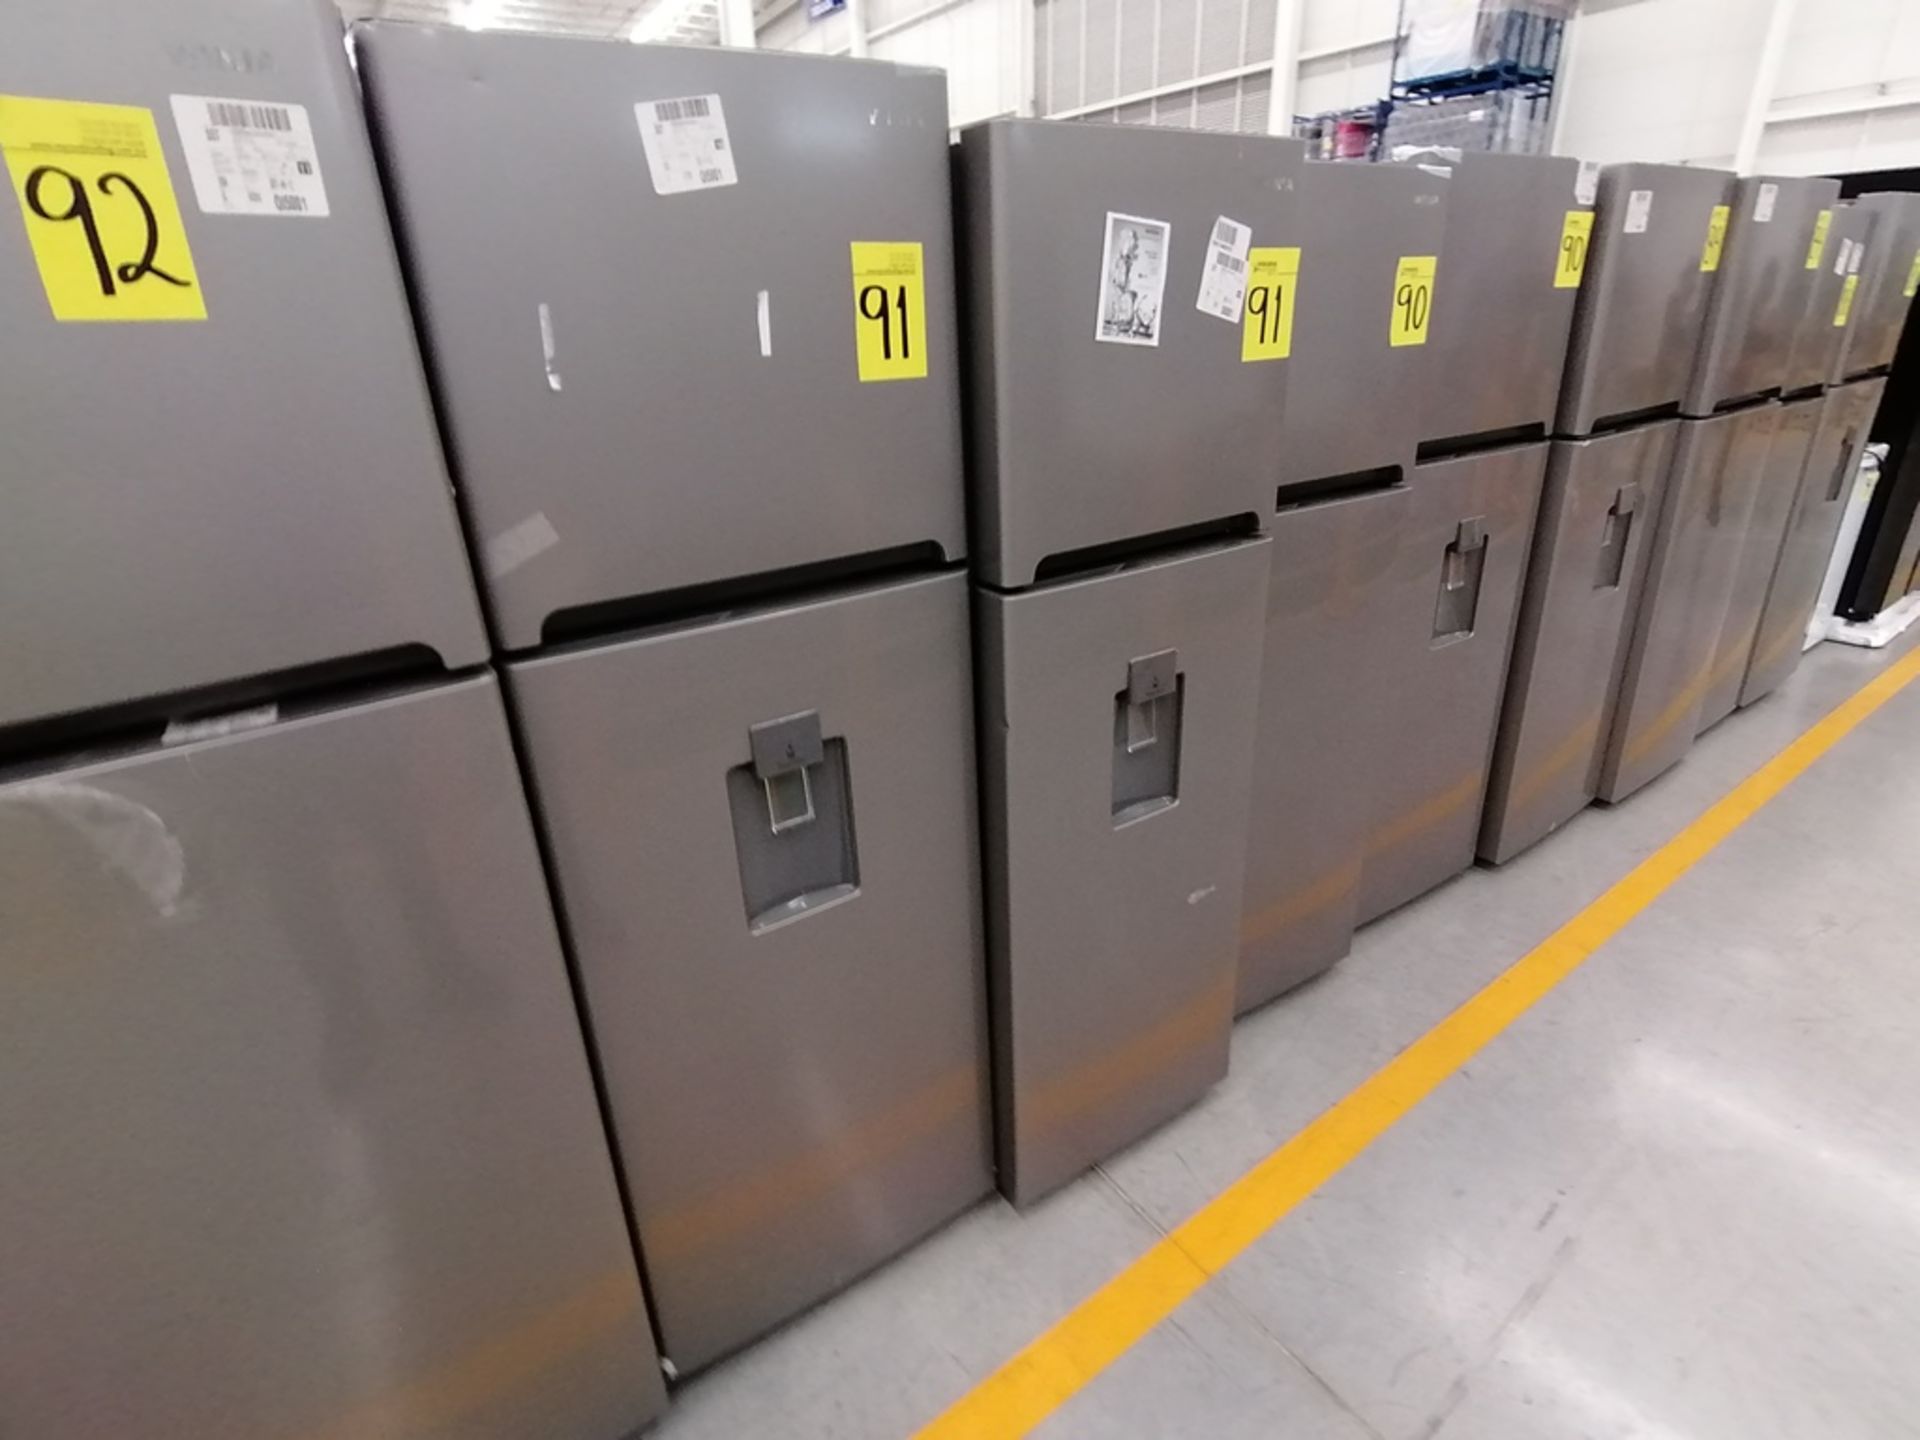 Lote de 2 Refrigeradores incluye: 1 Refrigerador con dispensador de agua, Marca Winia, Modelo DFR32 - Image 2 of 15